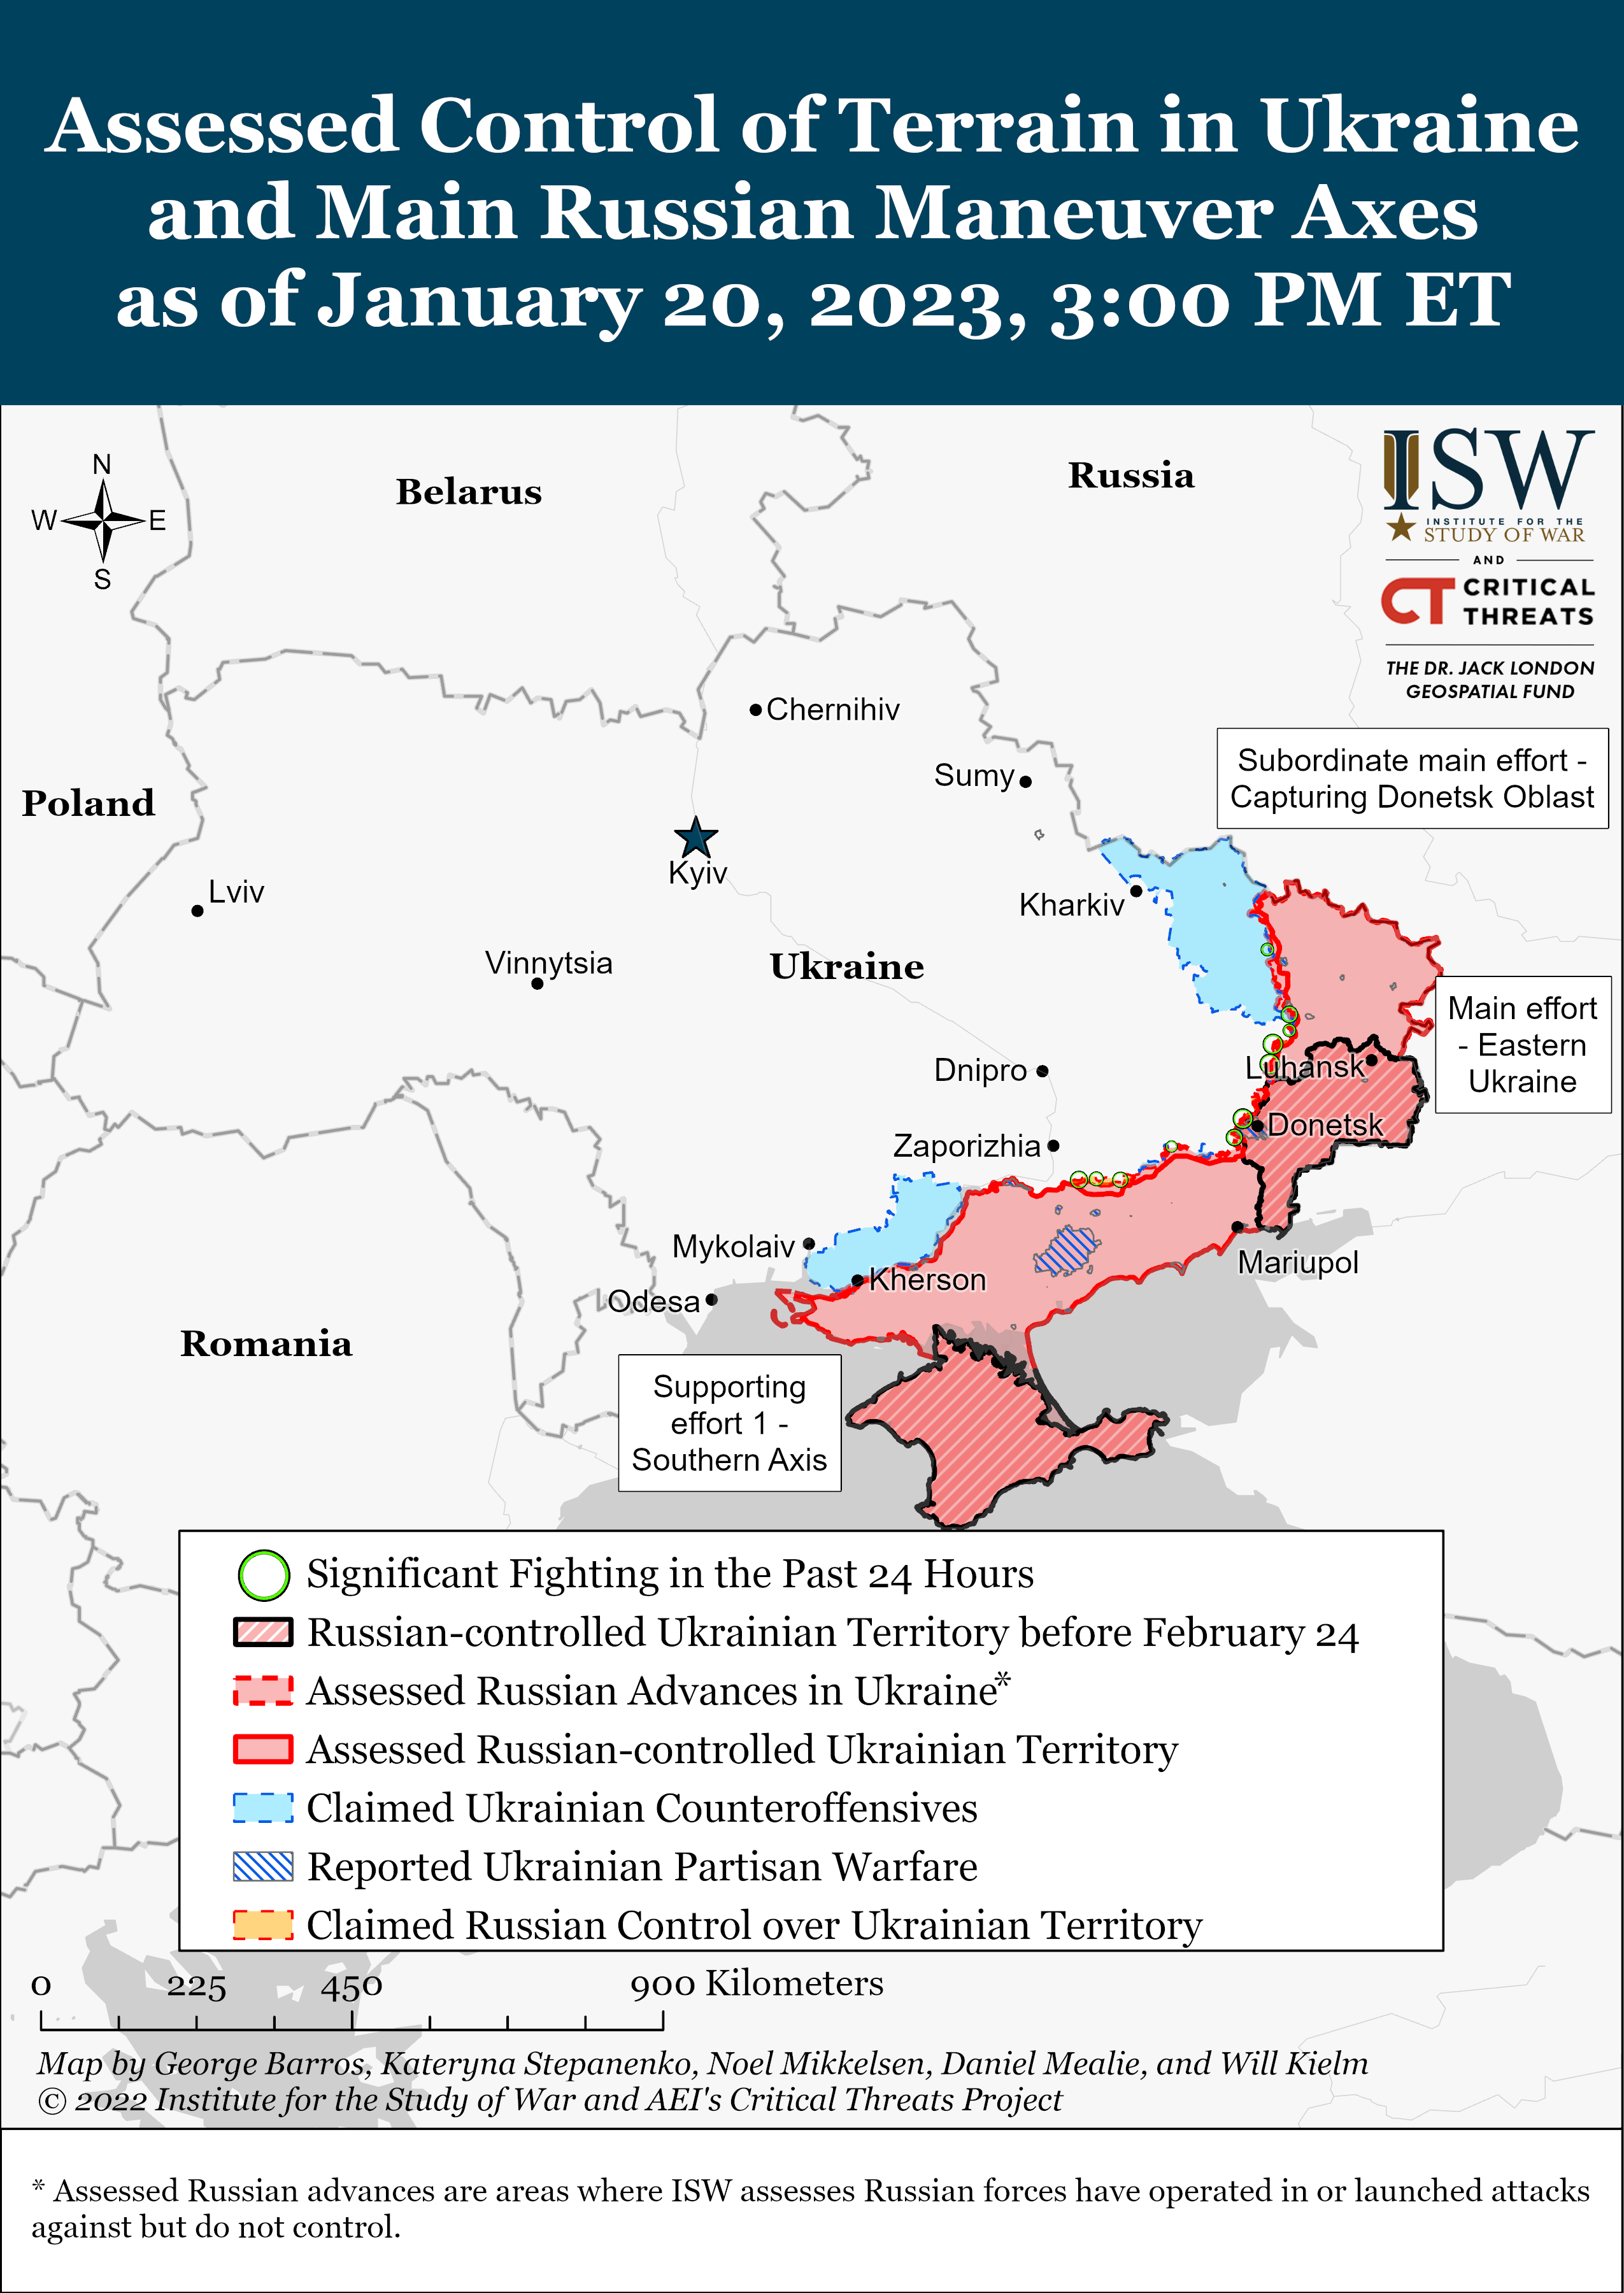 Війська РФ відступають біля Сватового і готуються до оборони на півдні: карти боїв